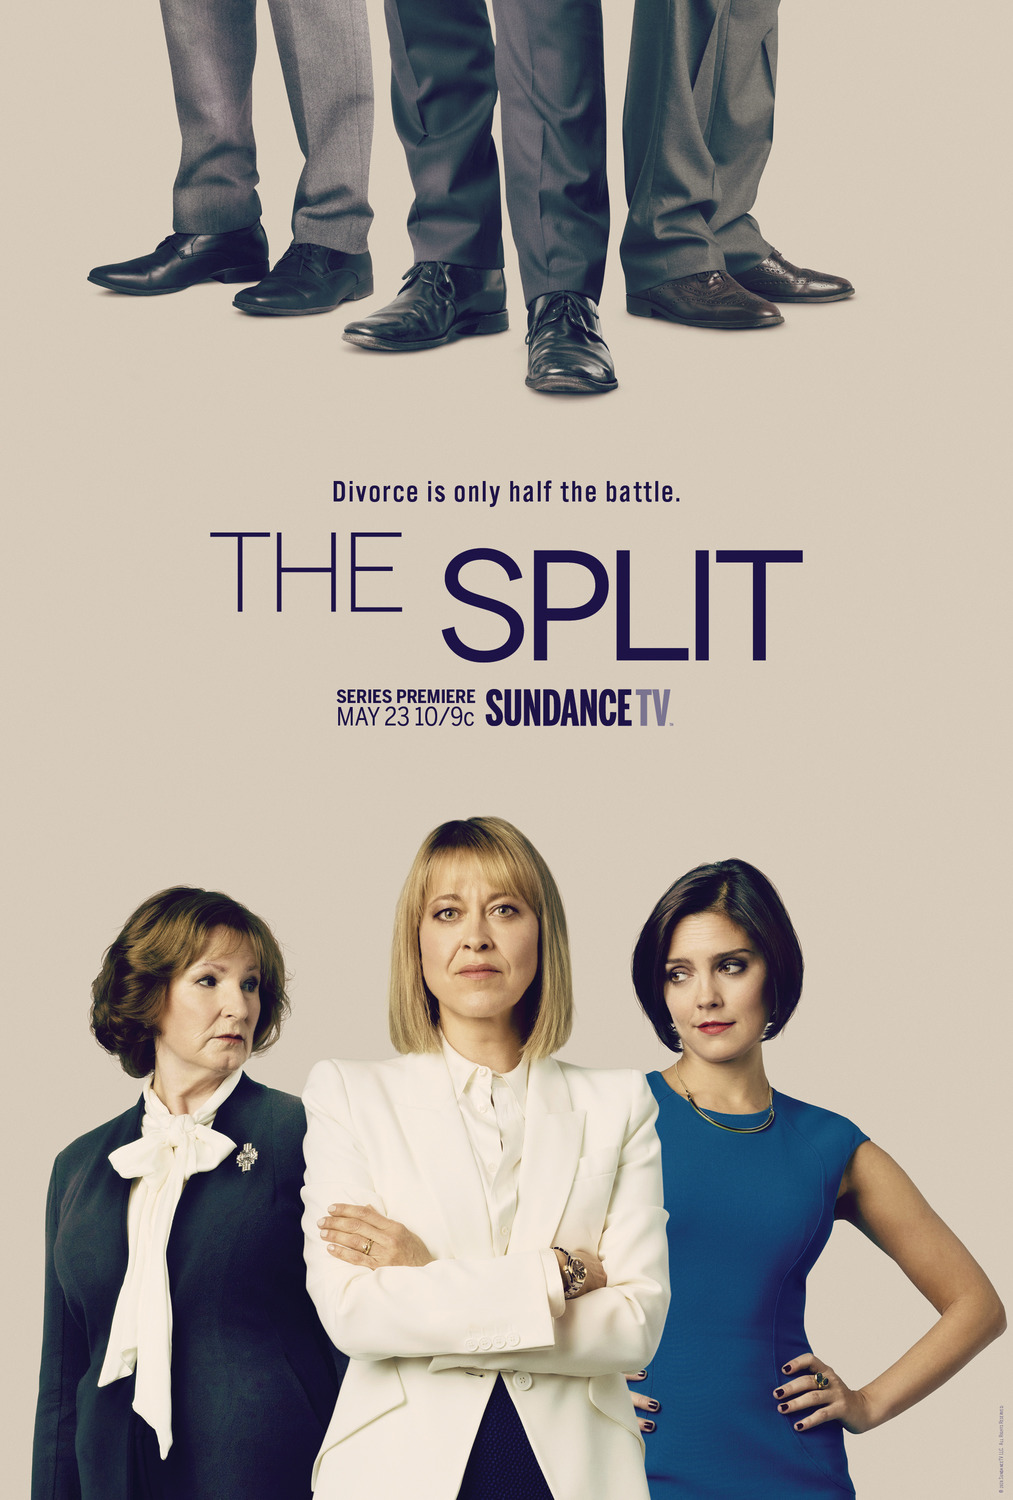 The Split - Season 3